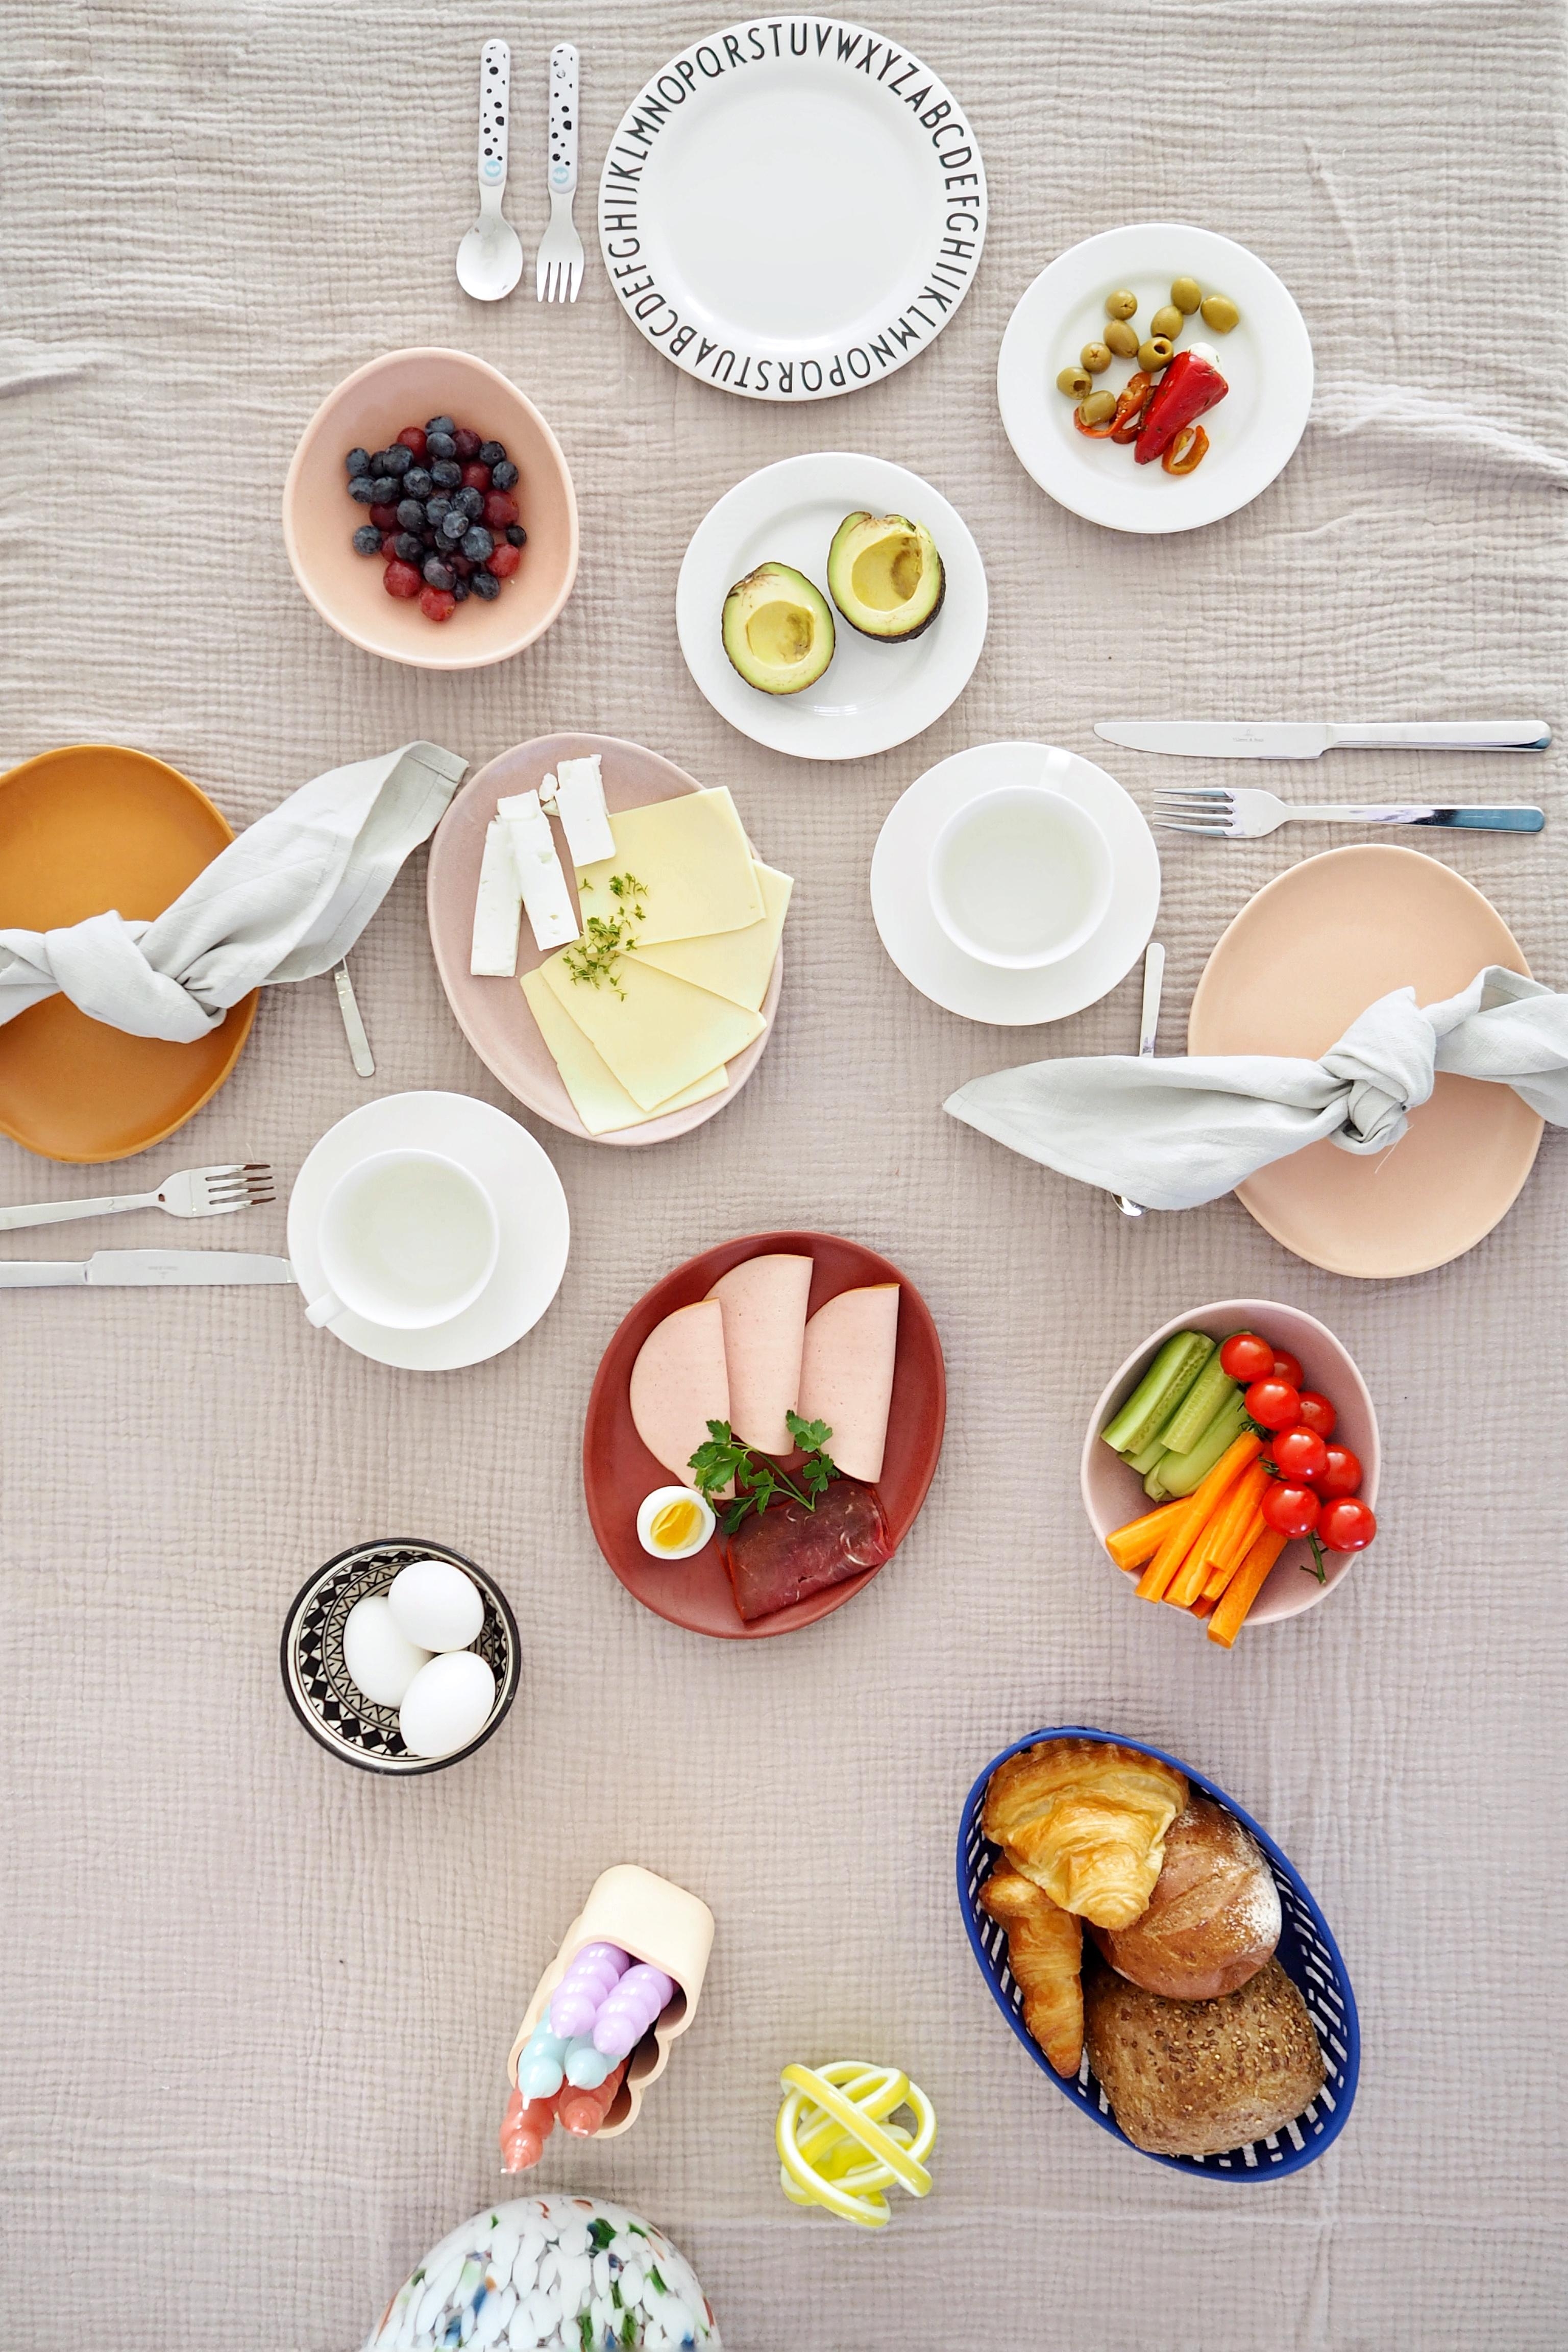 Sonntage sind für ein langes Frühstück da.
#frühstück #esstisch #tischdecke